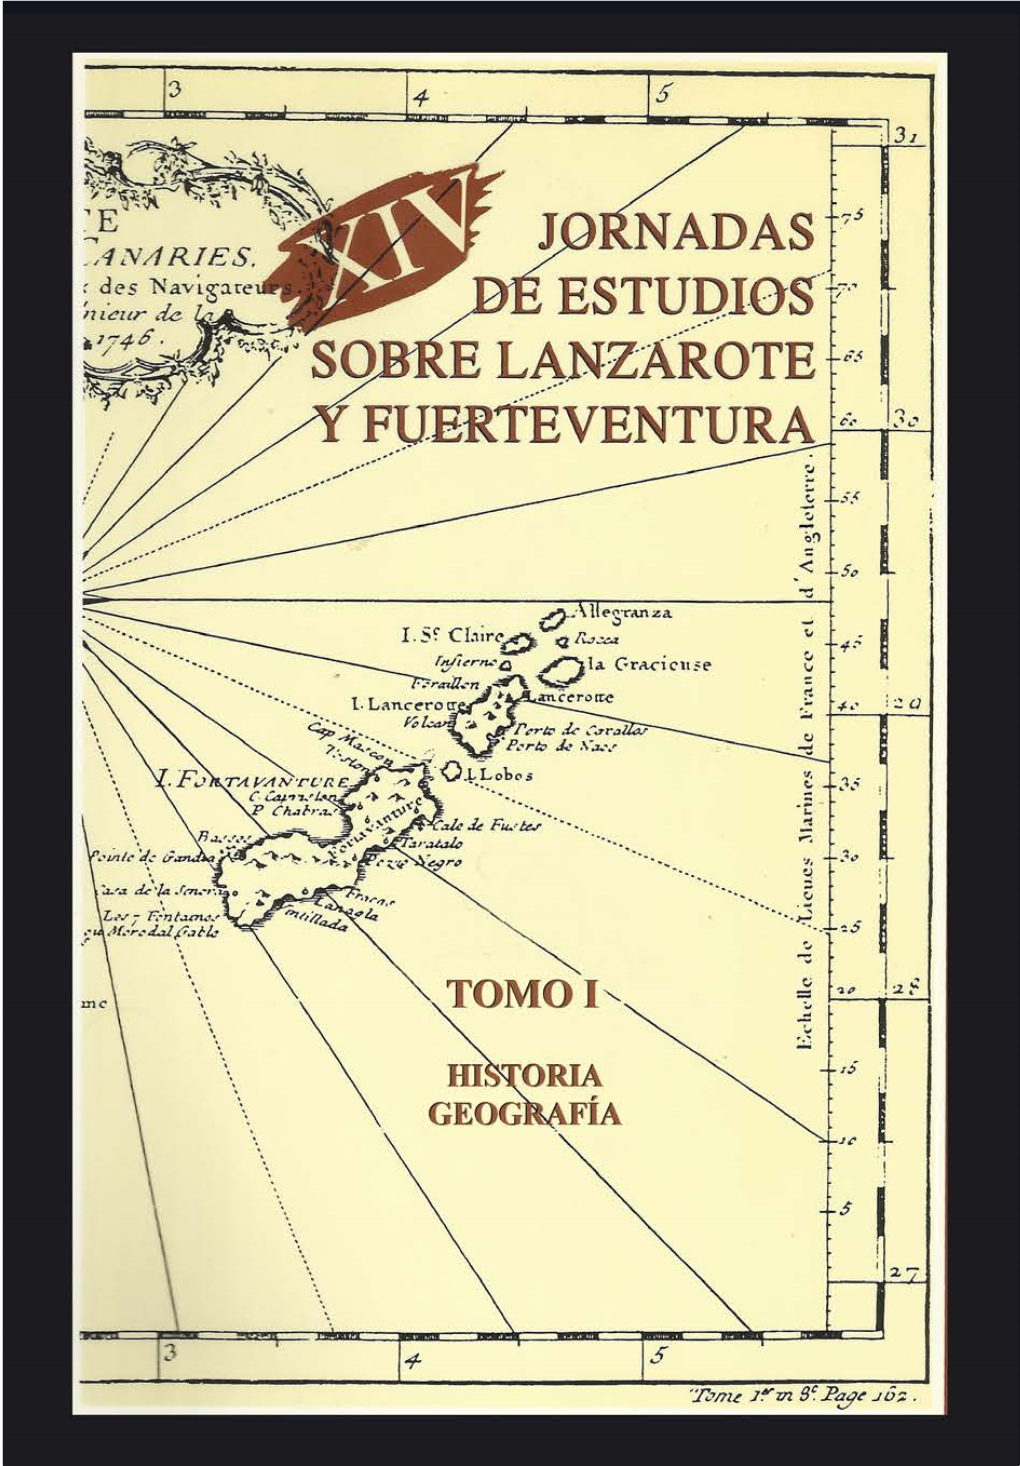 XIV Jornadas De Estudios Sobre Fuerteventura Y Lanzarote. Tomo 1